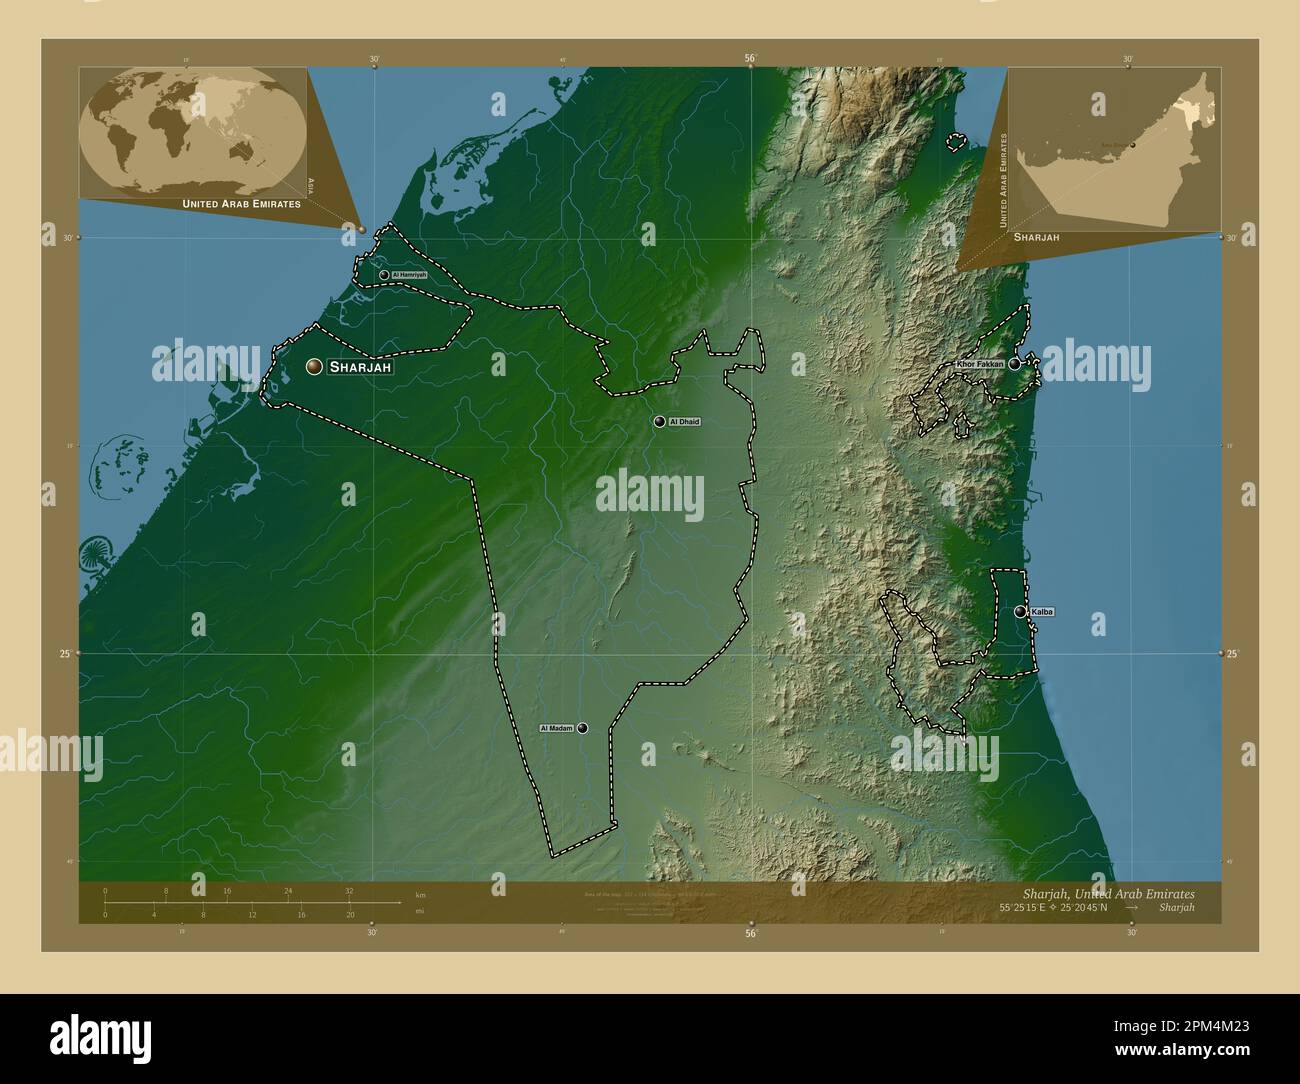 Sharjah, émirat des Émirats arabes Unis. Carte d'altitude en couleur avec lacs et rivières. Lieux et noms des principales villes de la région. Angle auxil Banque D'Images